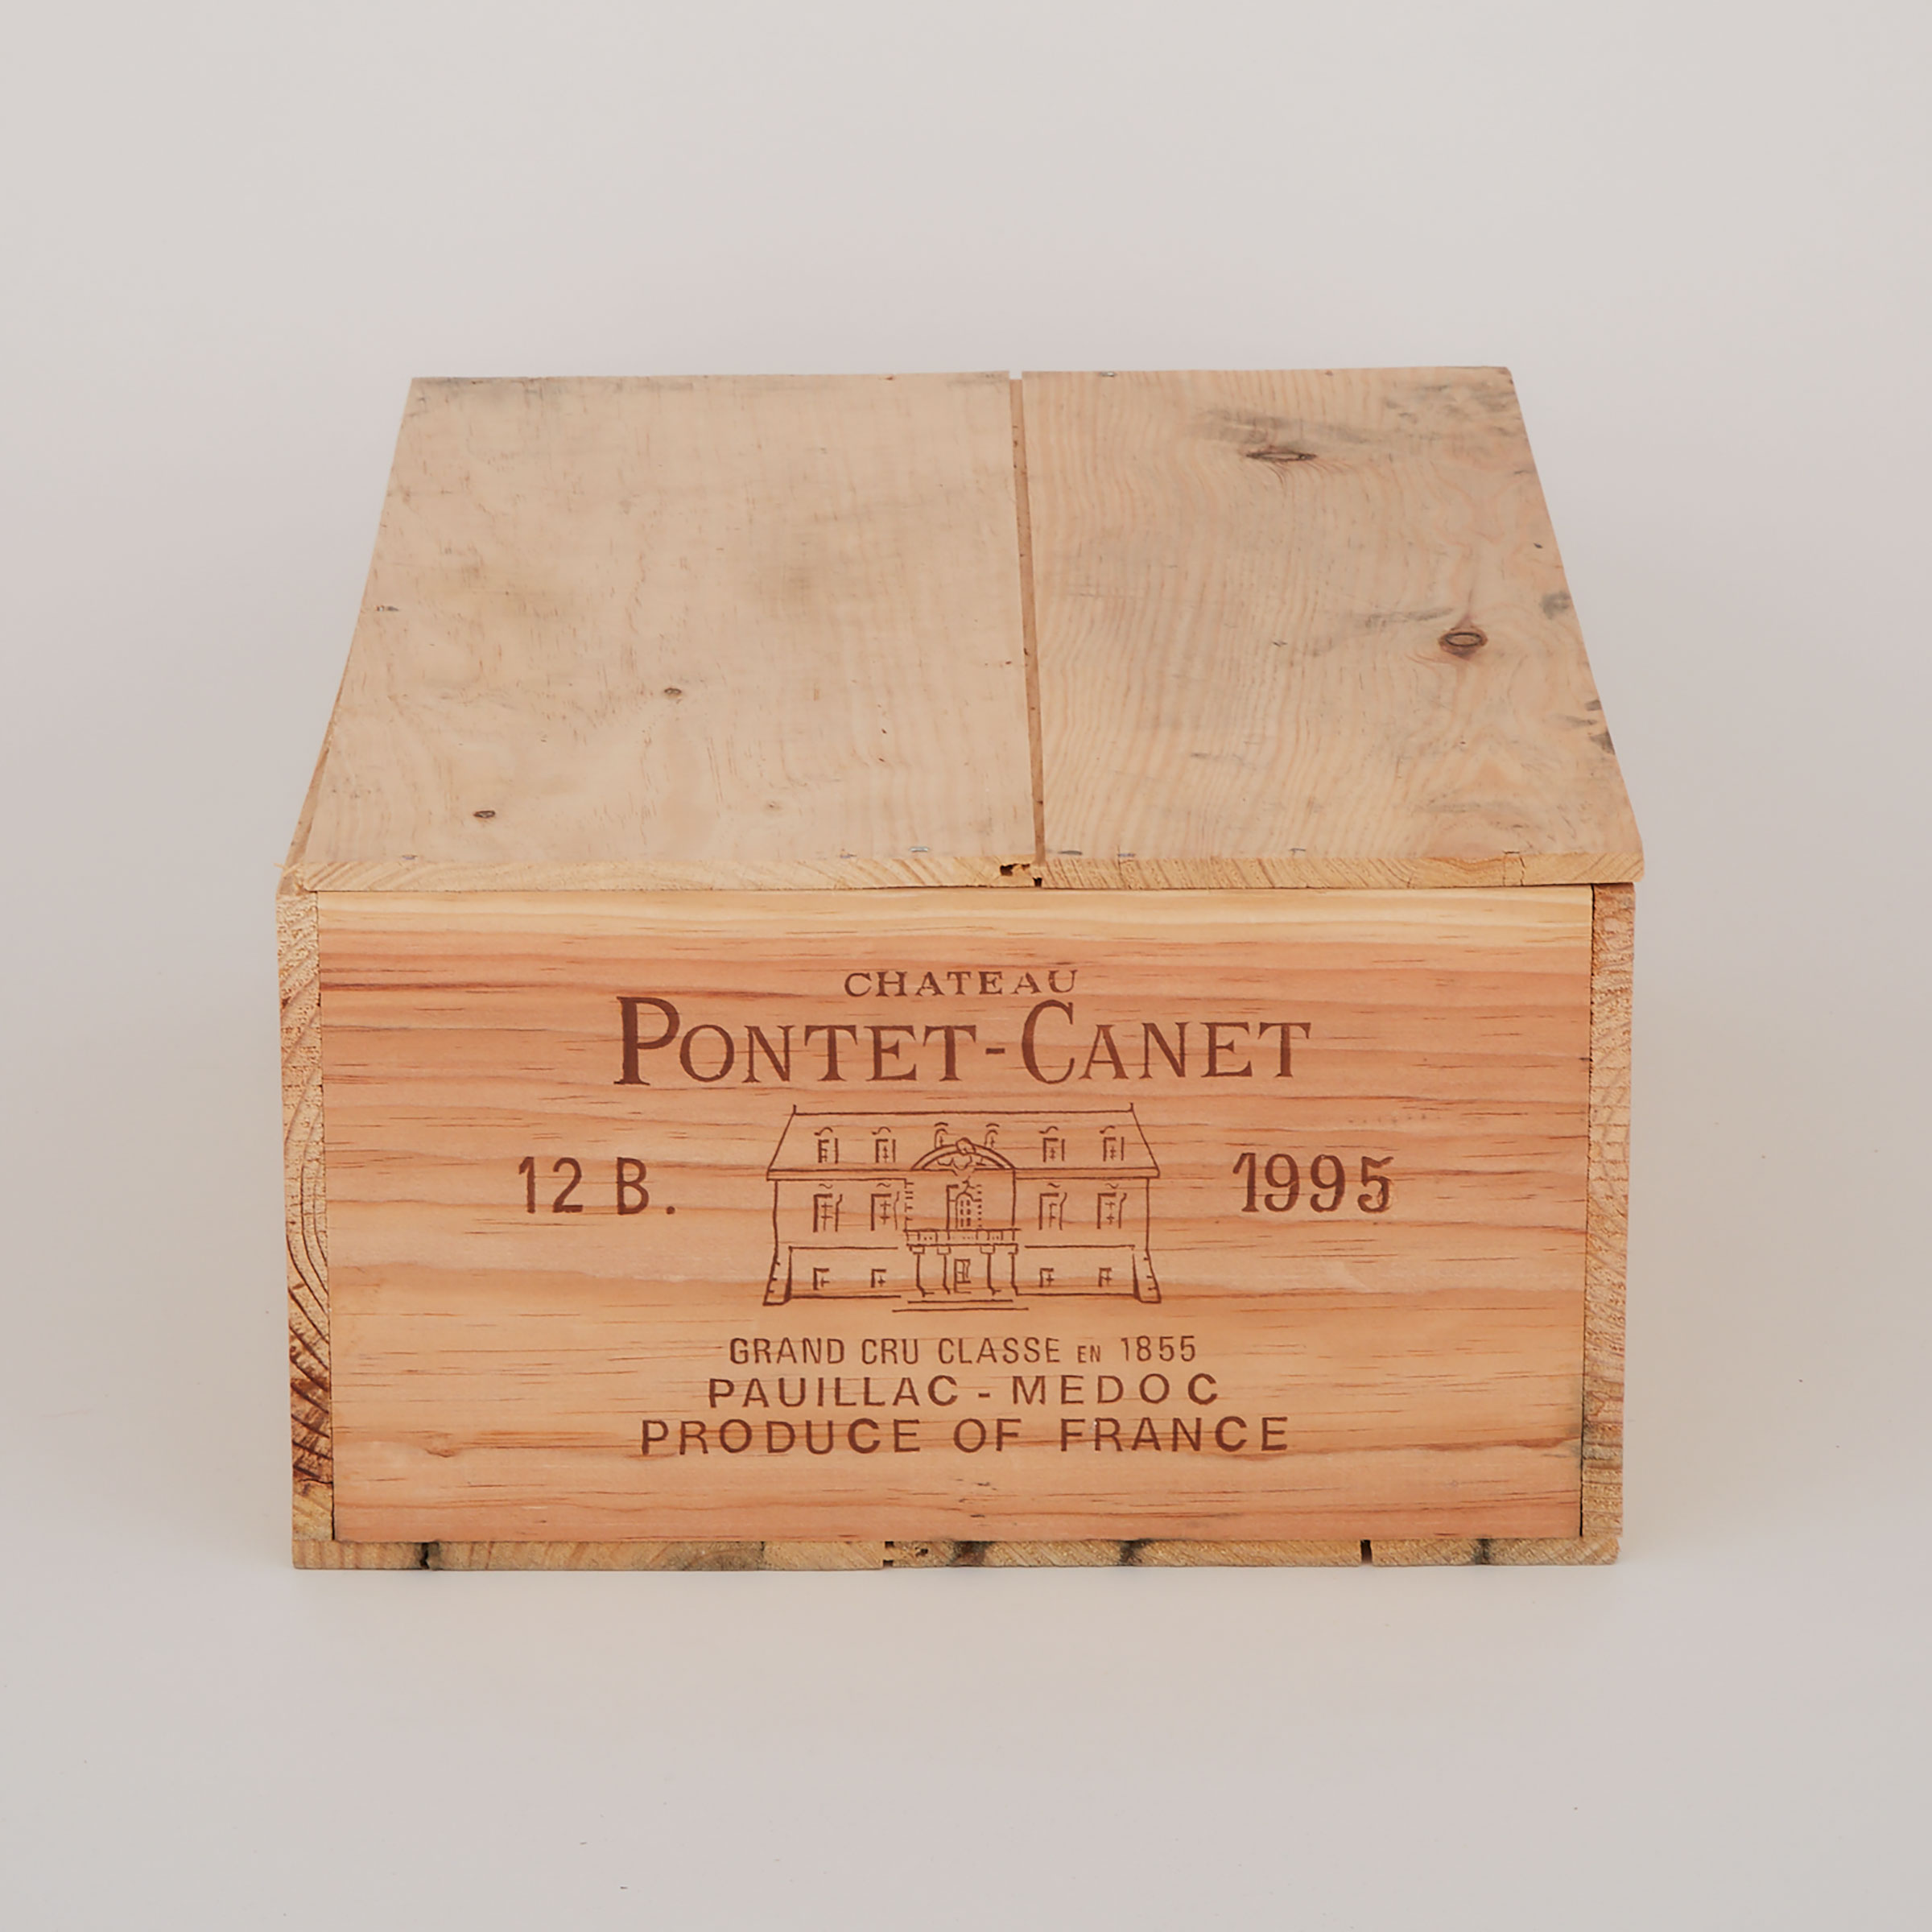 CHÂTEAU PONTET-CANET 1995 (12, OWC)